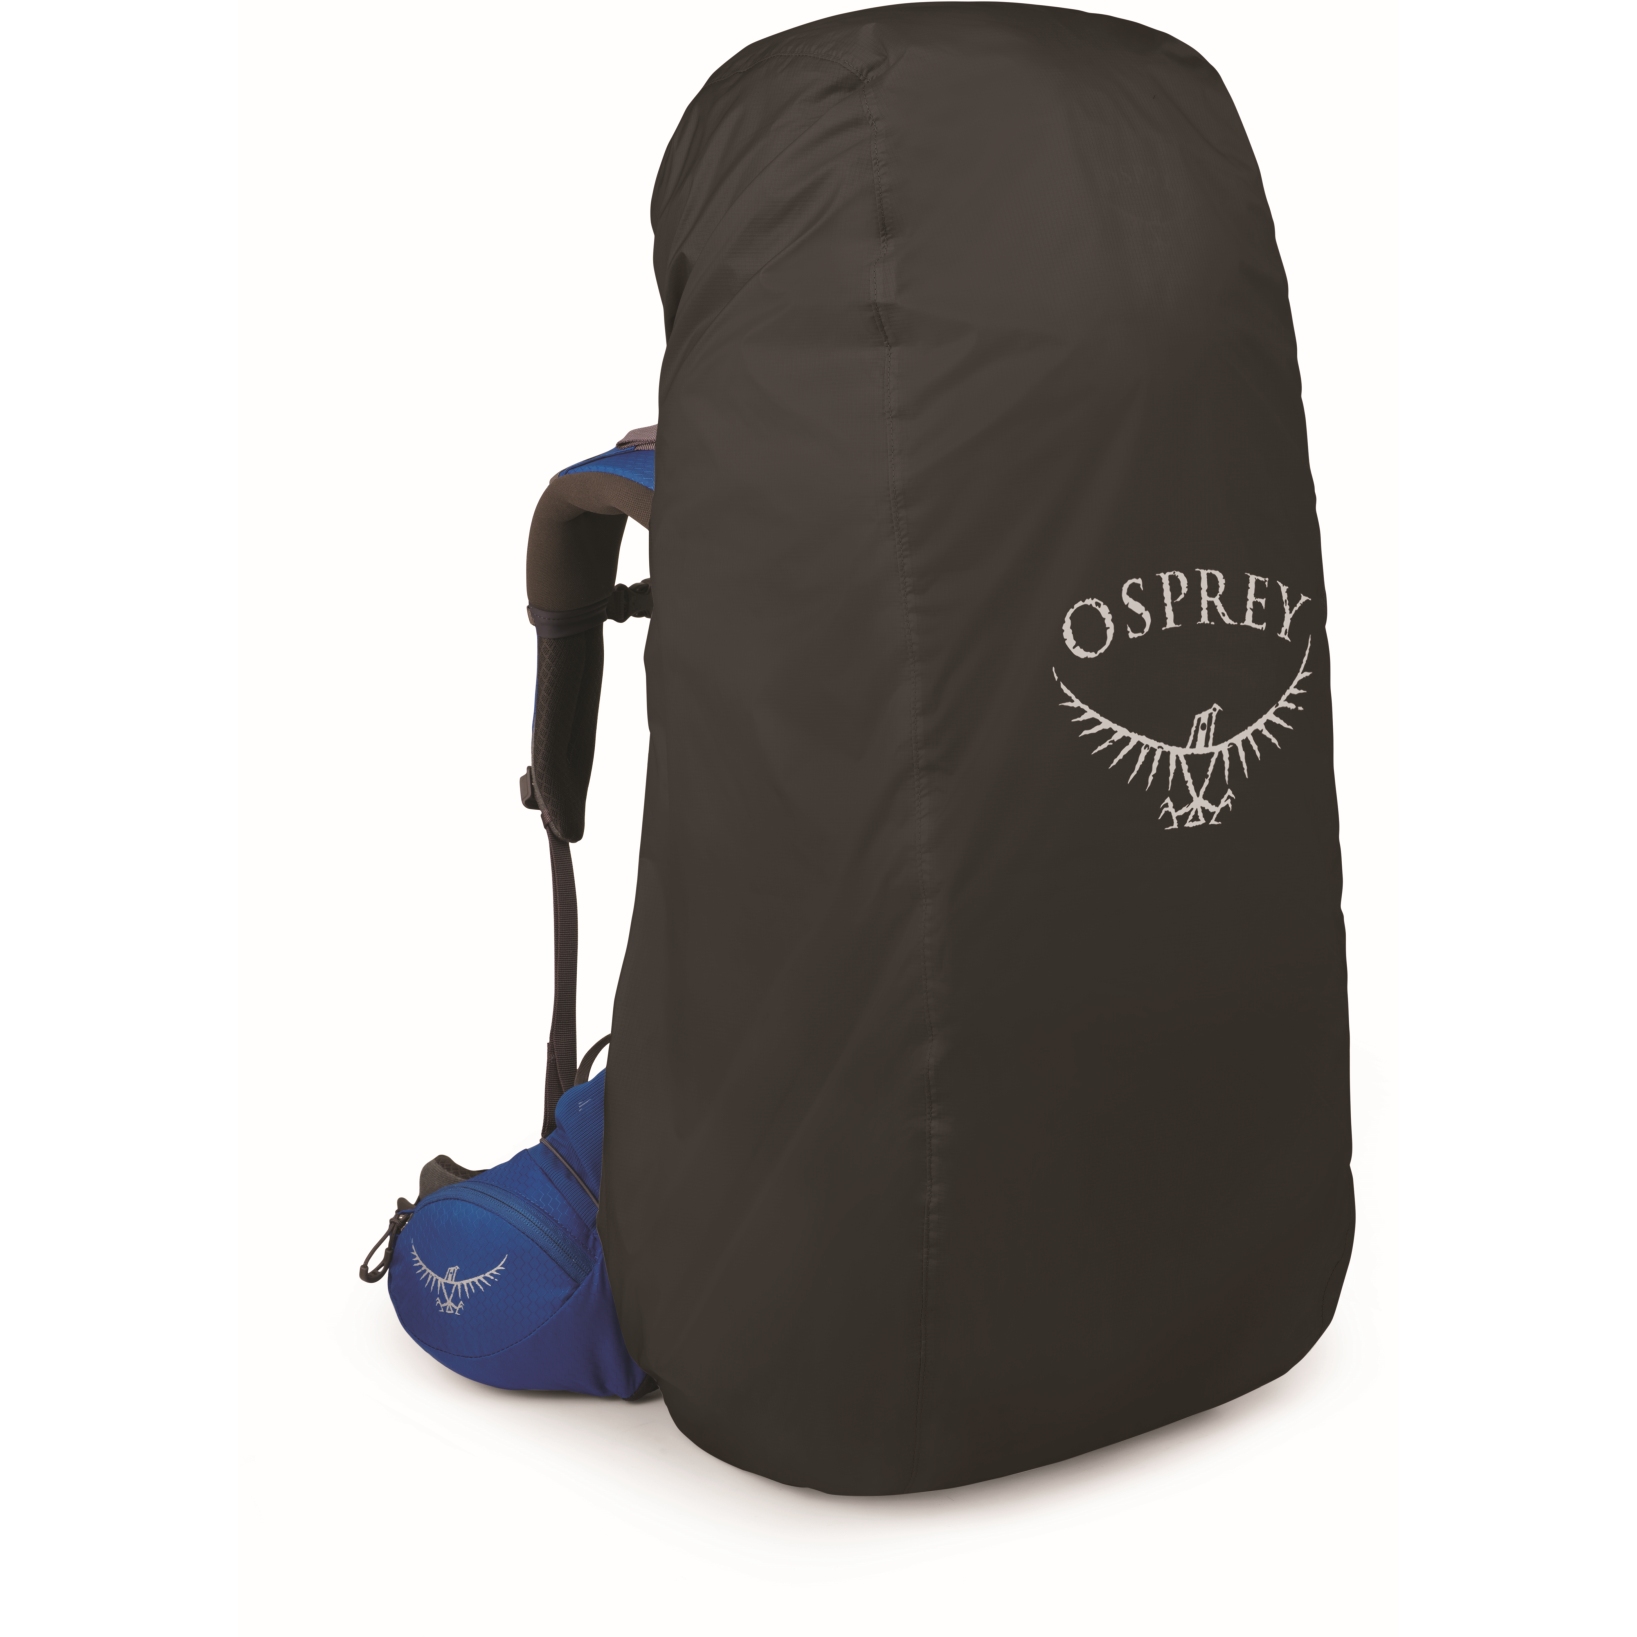 Produktbild von Osprey Ultralight Regenhülle - XL - Schwarz